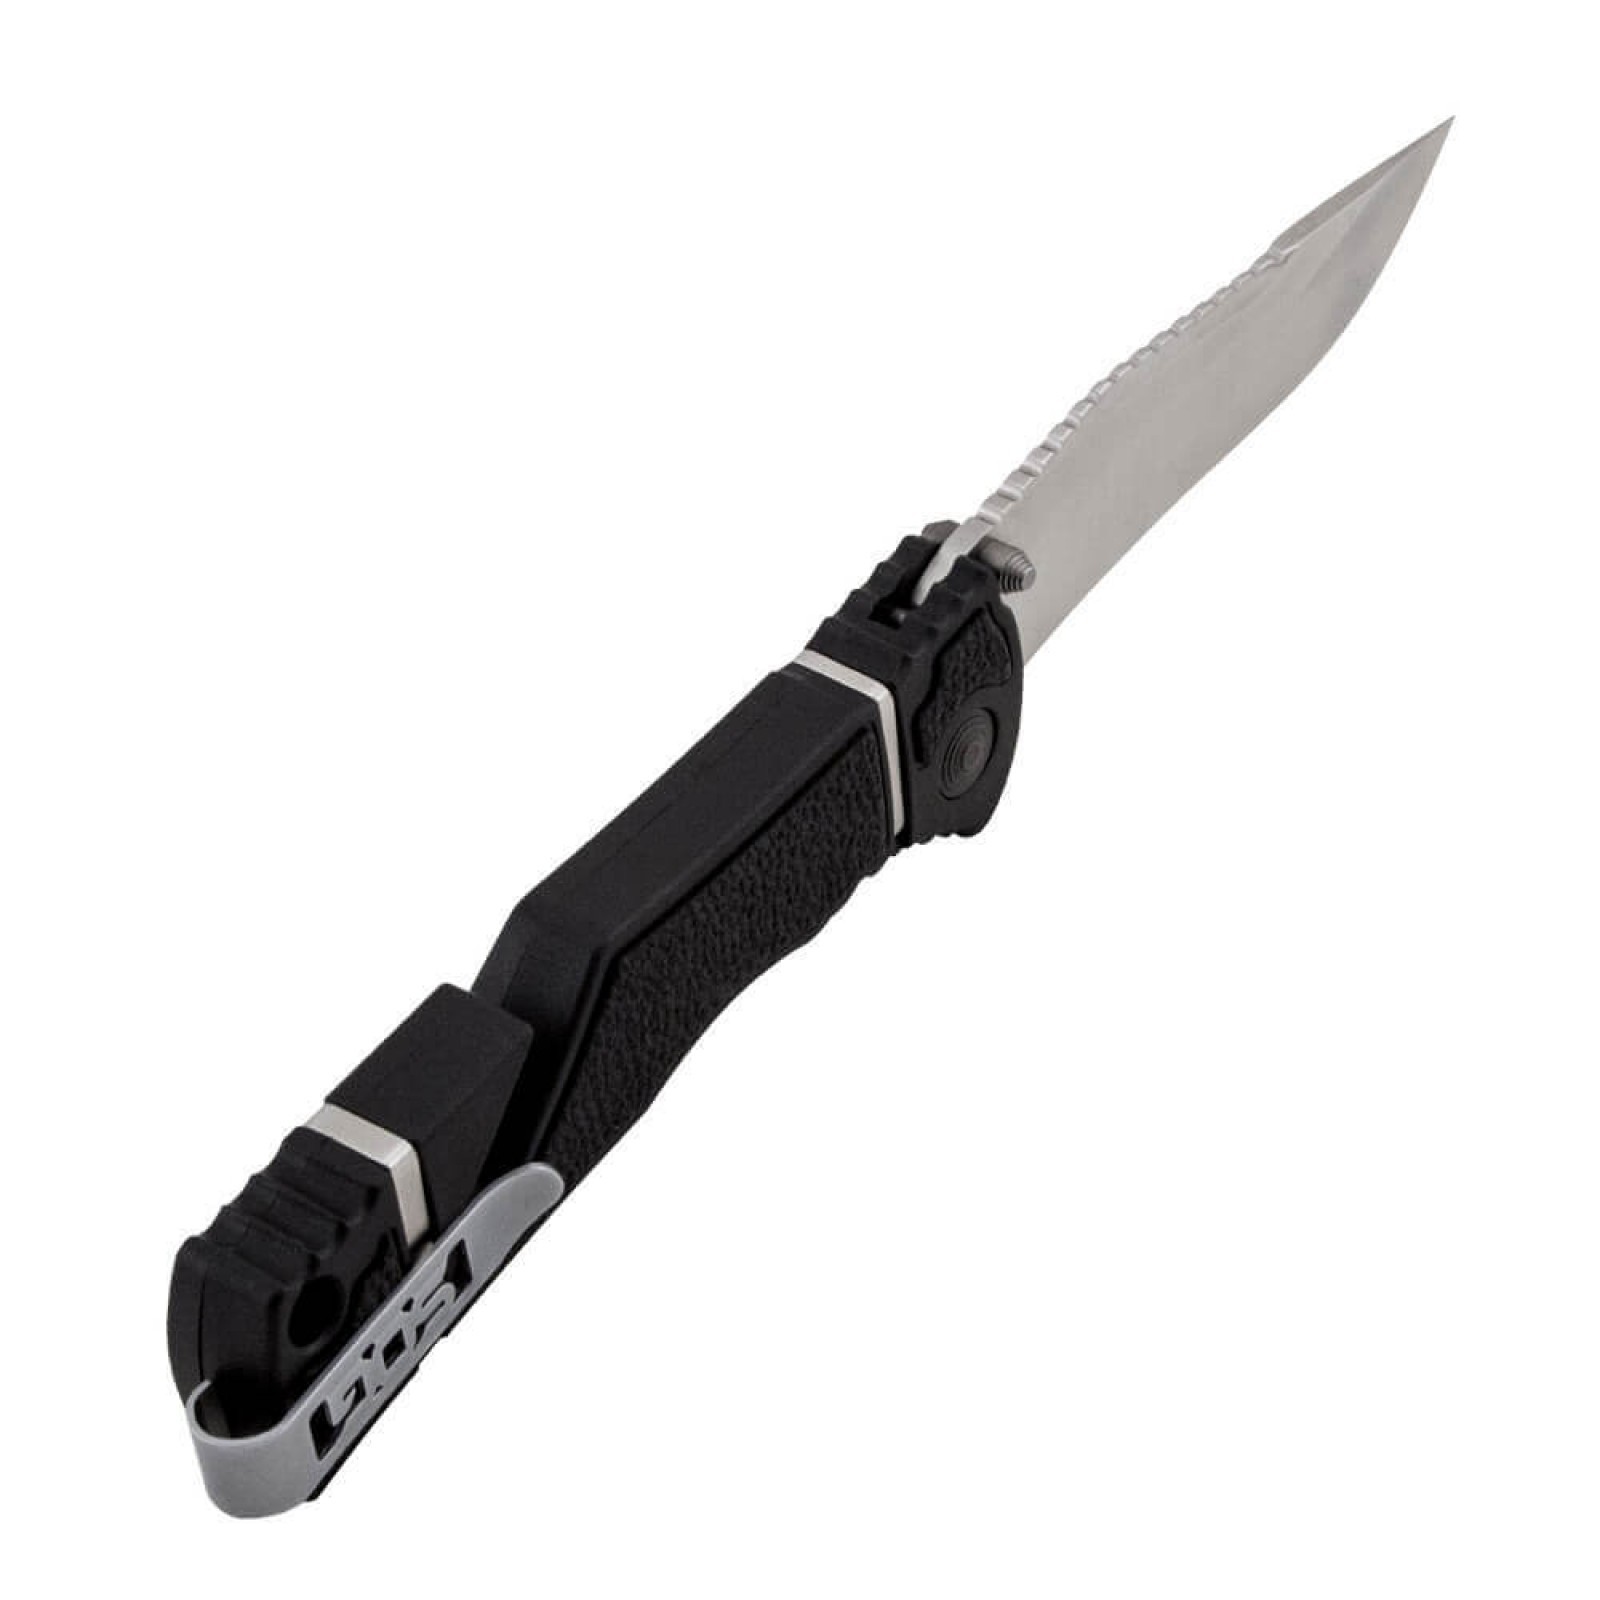 Складной нож TRIDENT ELITE - SOG TF101, сталь AUS-8, рукоять термопластик GRN с резиновыми вставками - фото 2